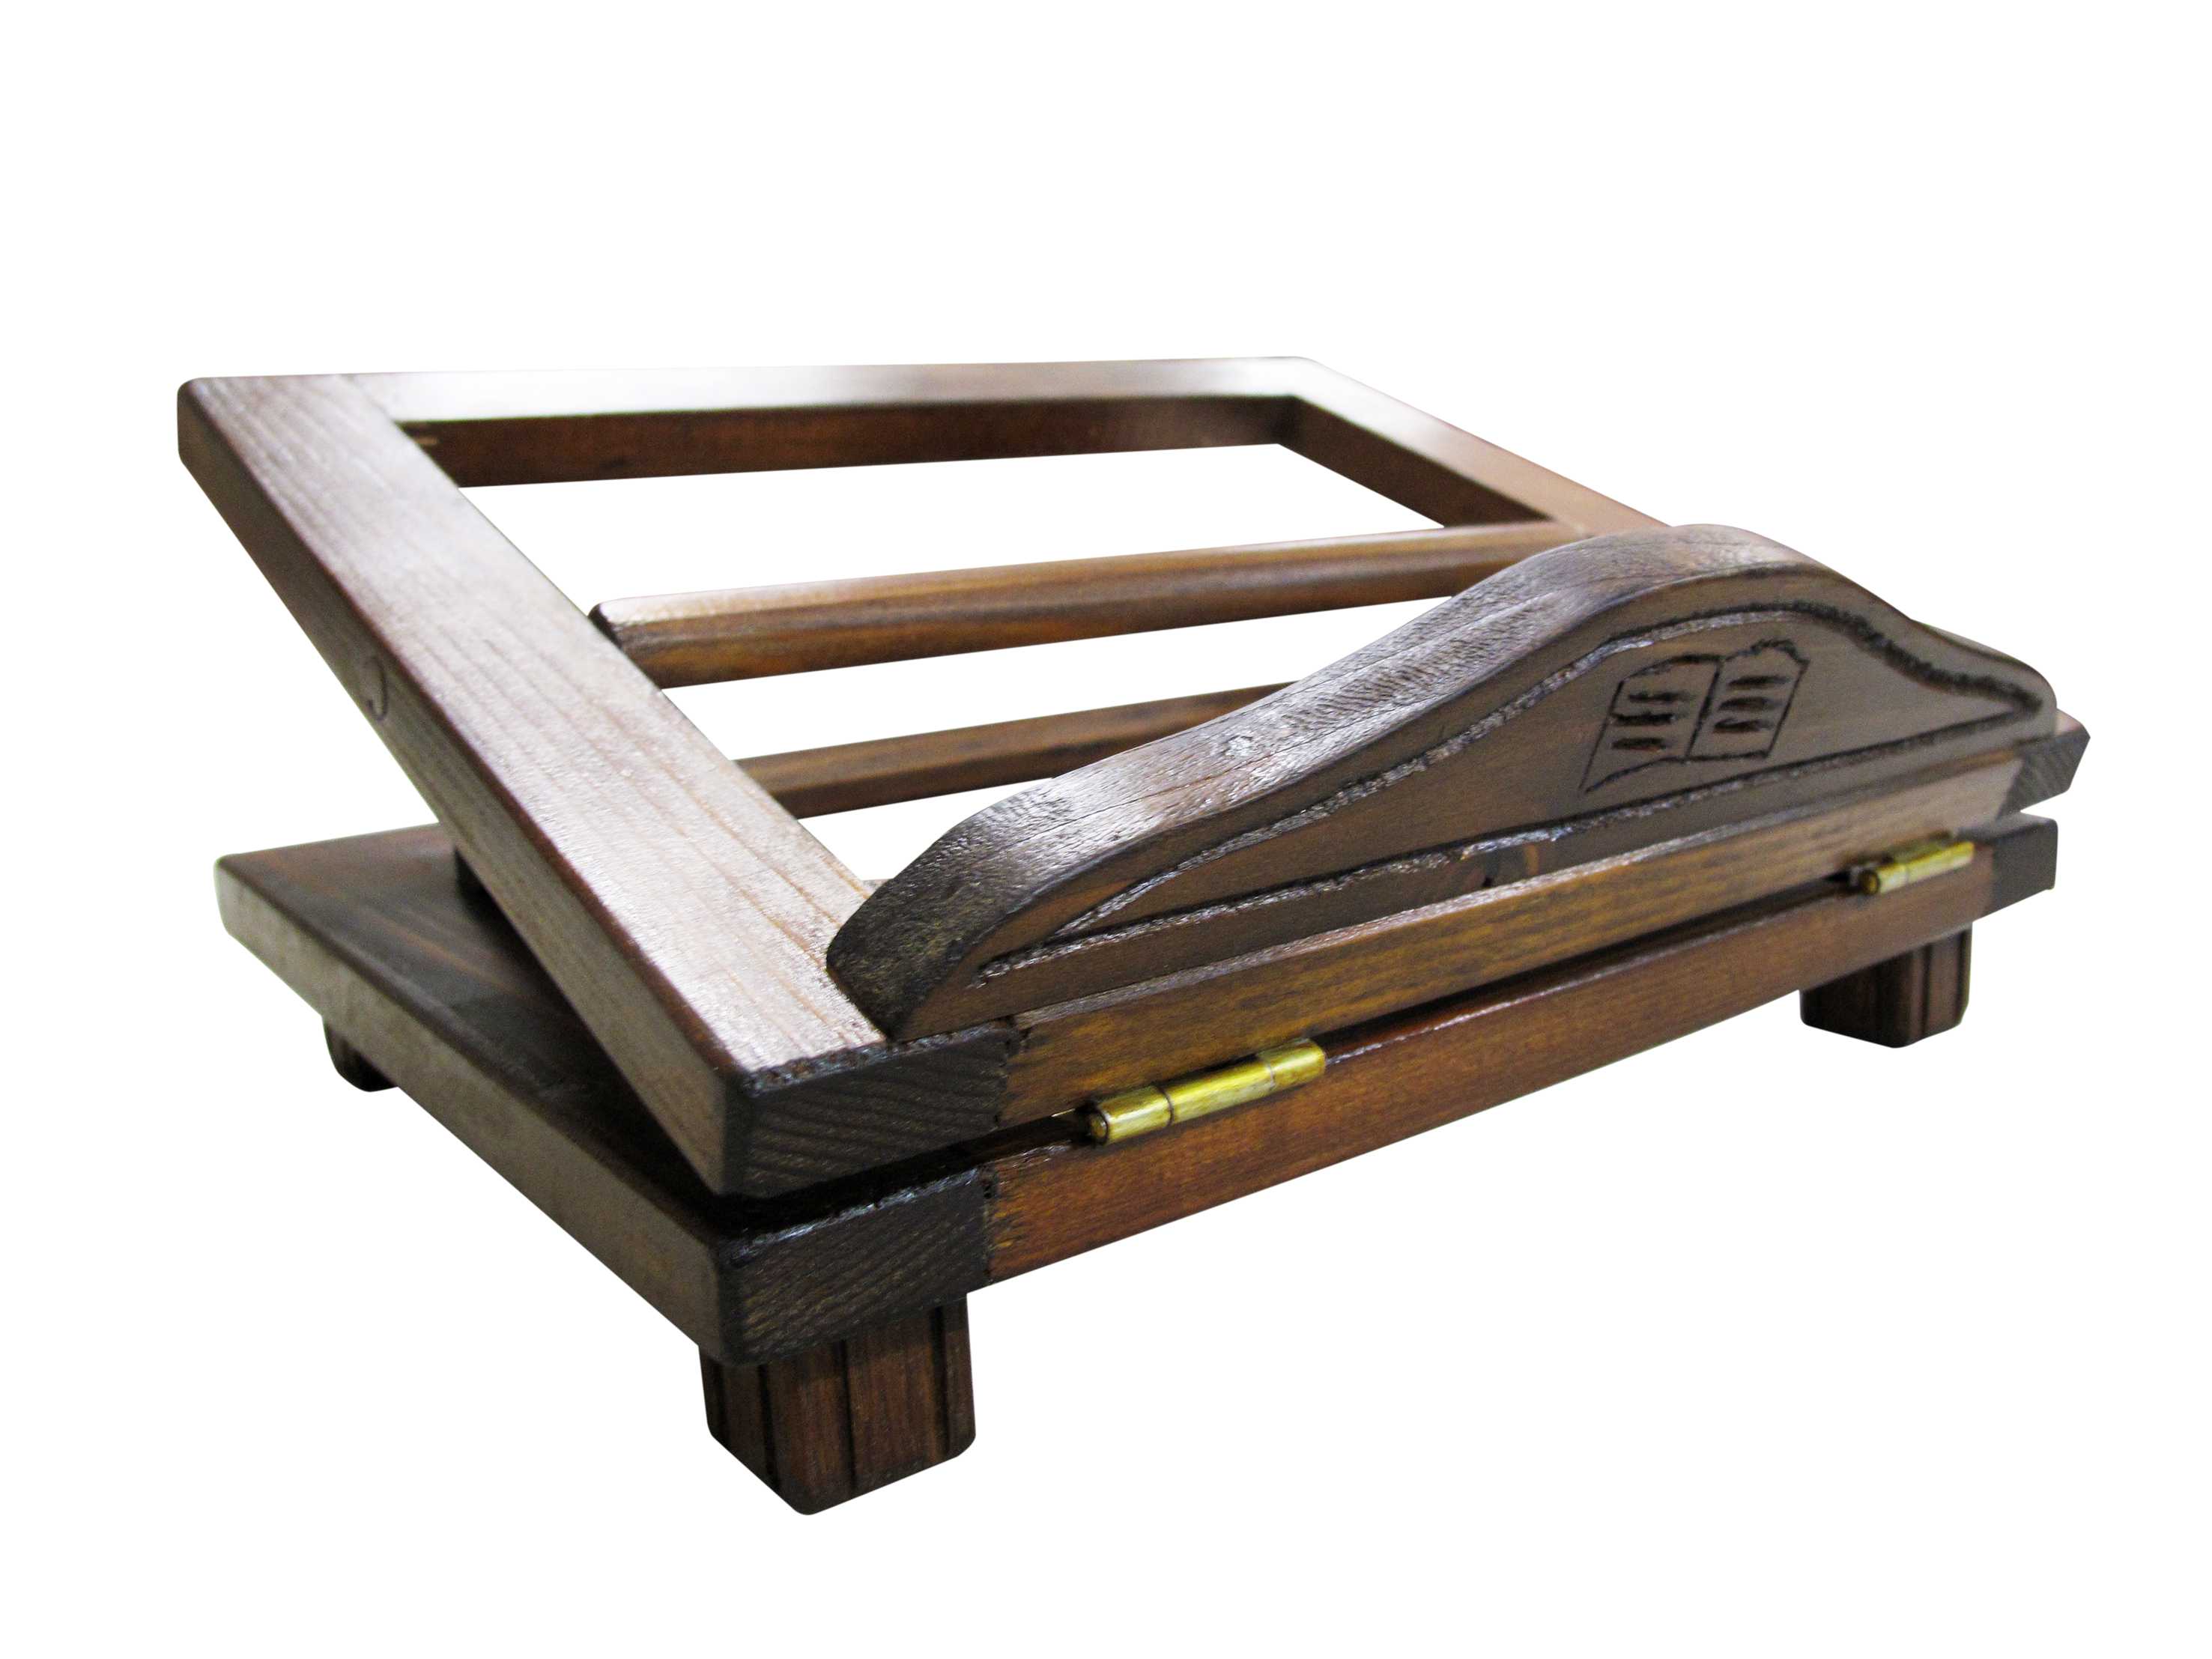 Leggio da tavolo in legno stile antico - dimensioni 27x22 cm, in legno,  Leggii, Articoli Religiosi 